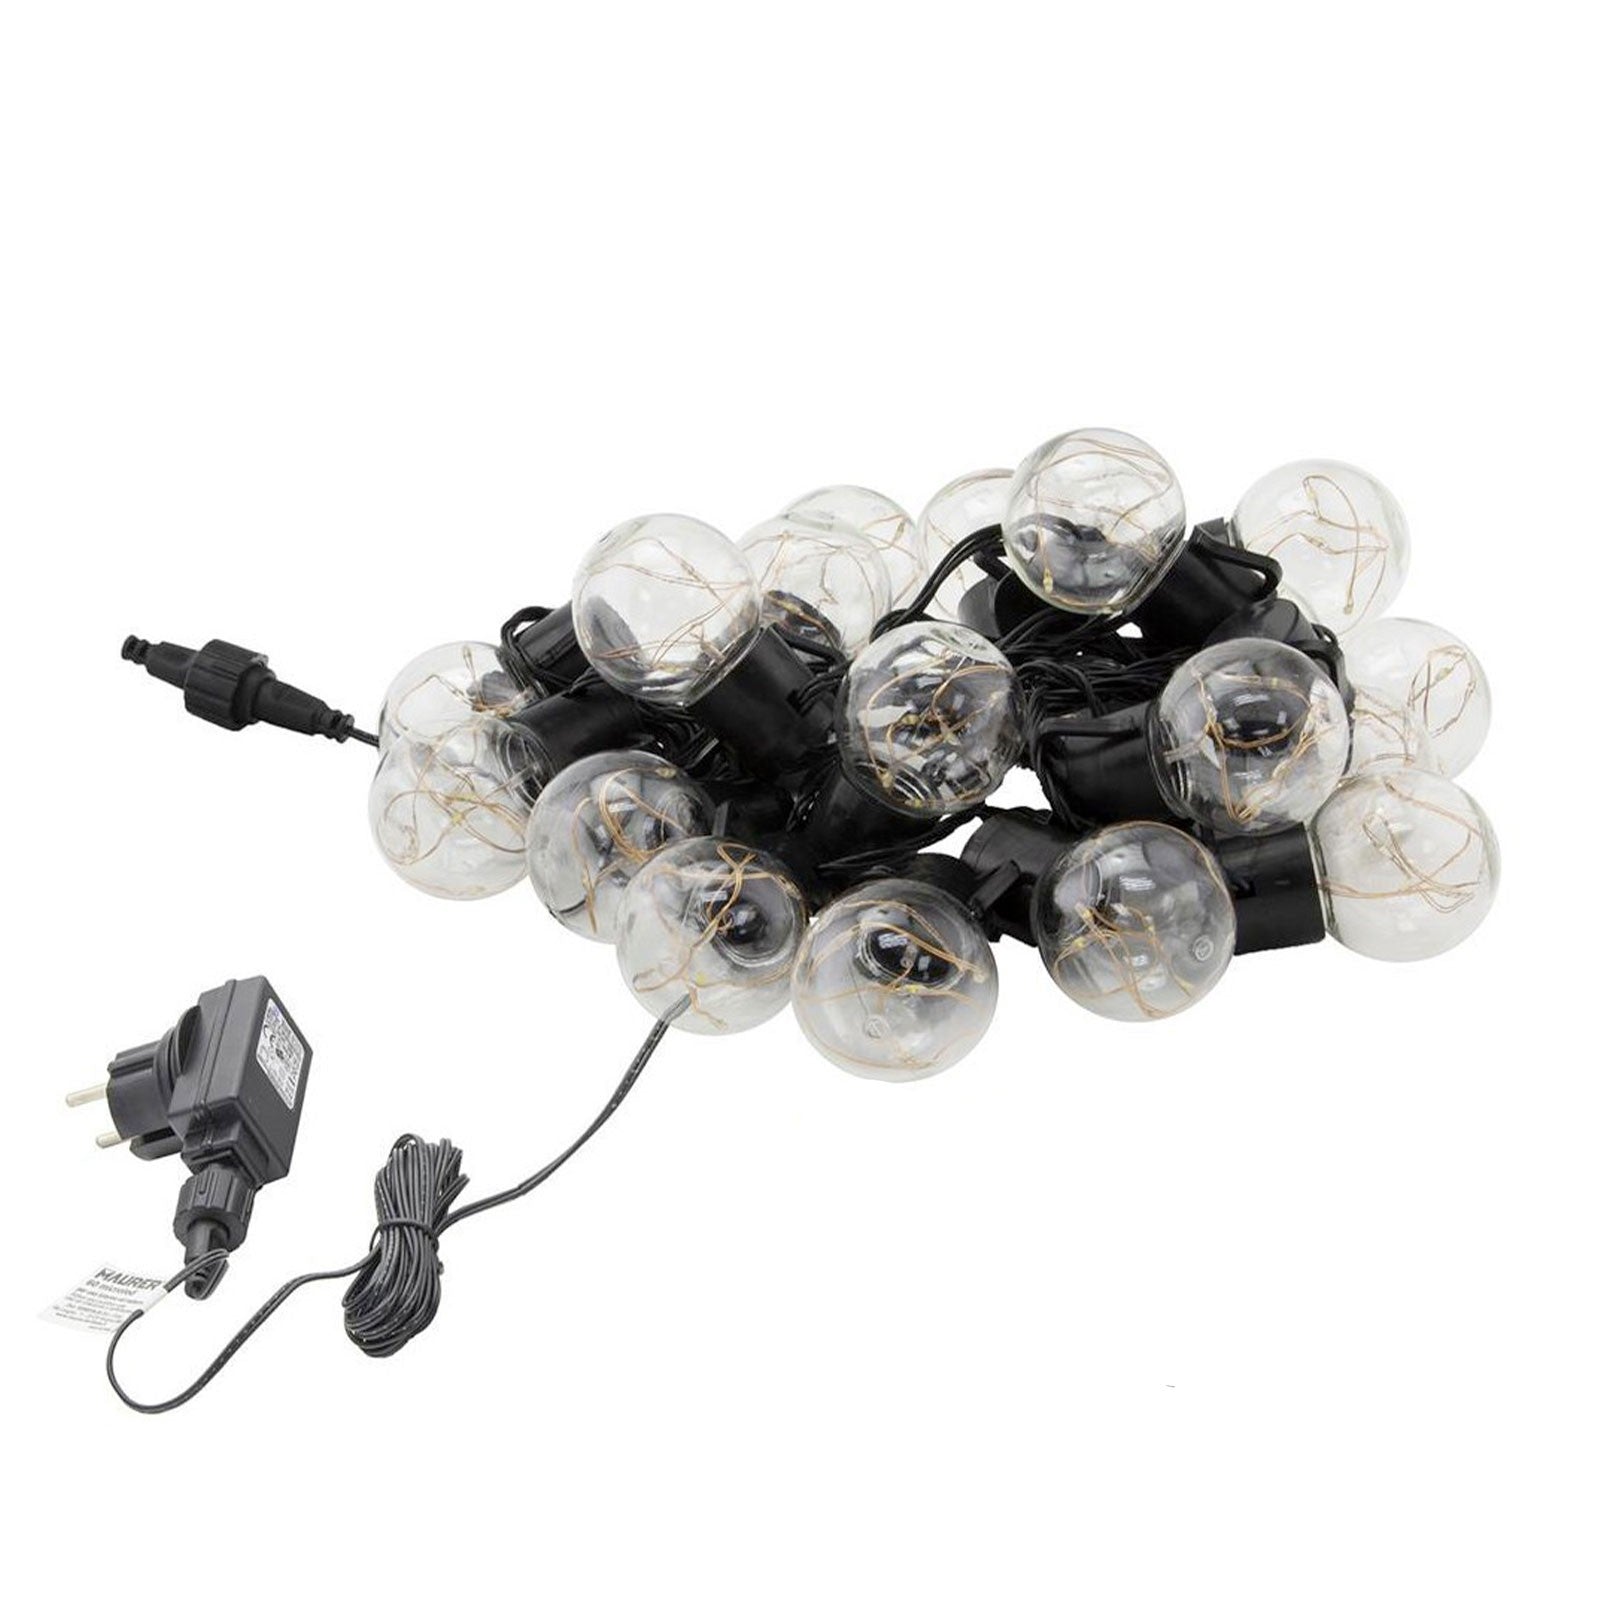 Serie di lampadine con microled a luce calda all'interno per interno ed esterno 6,8 mt